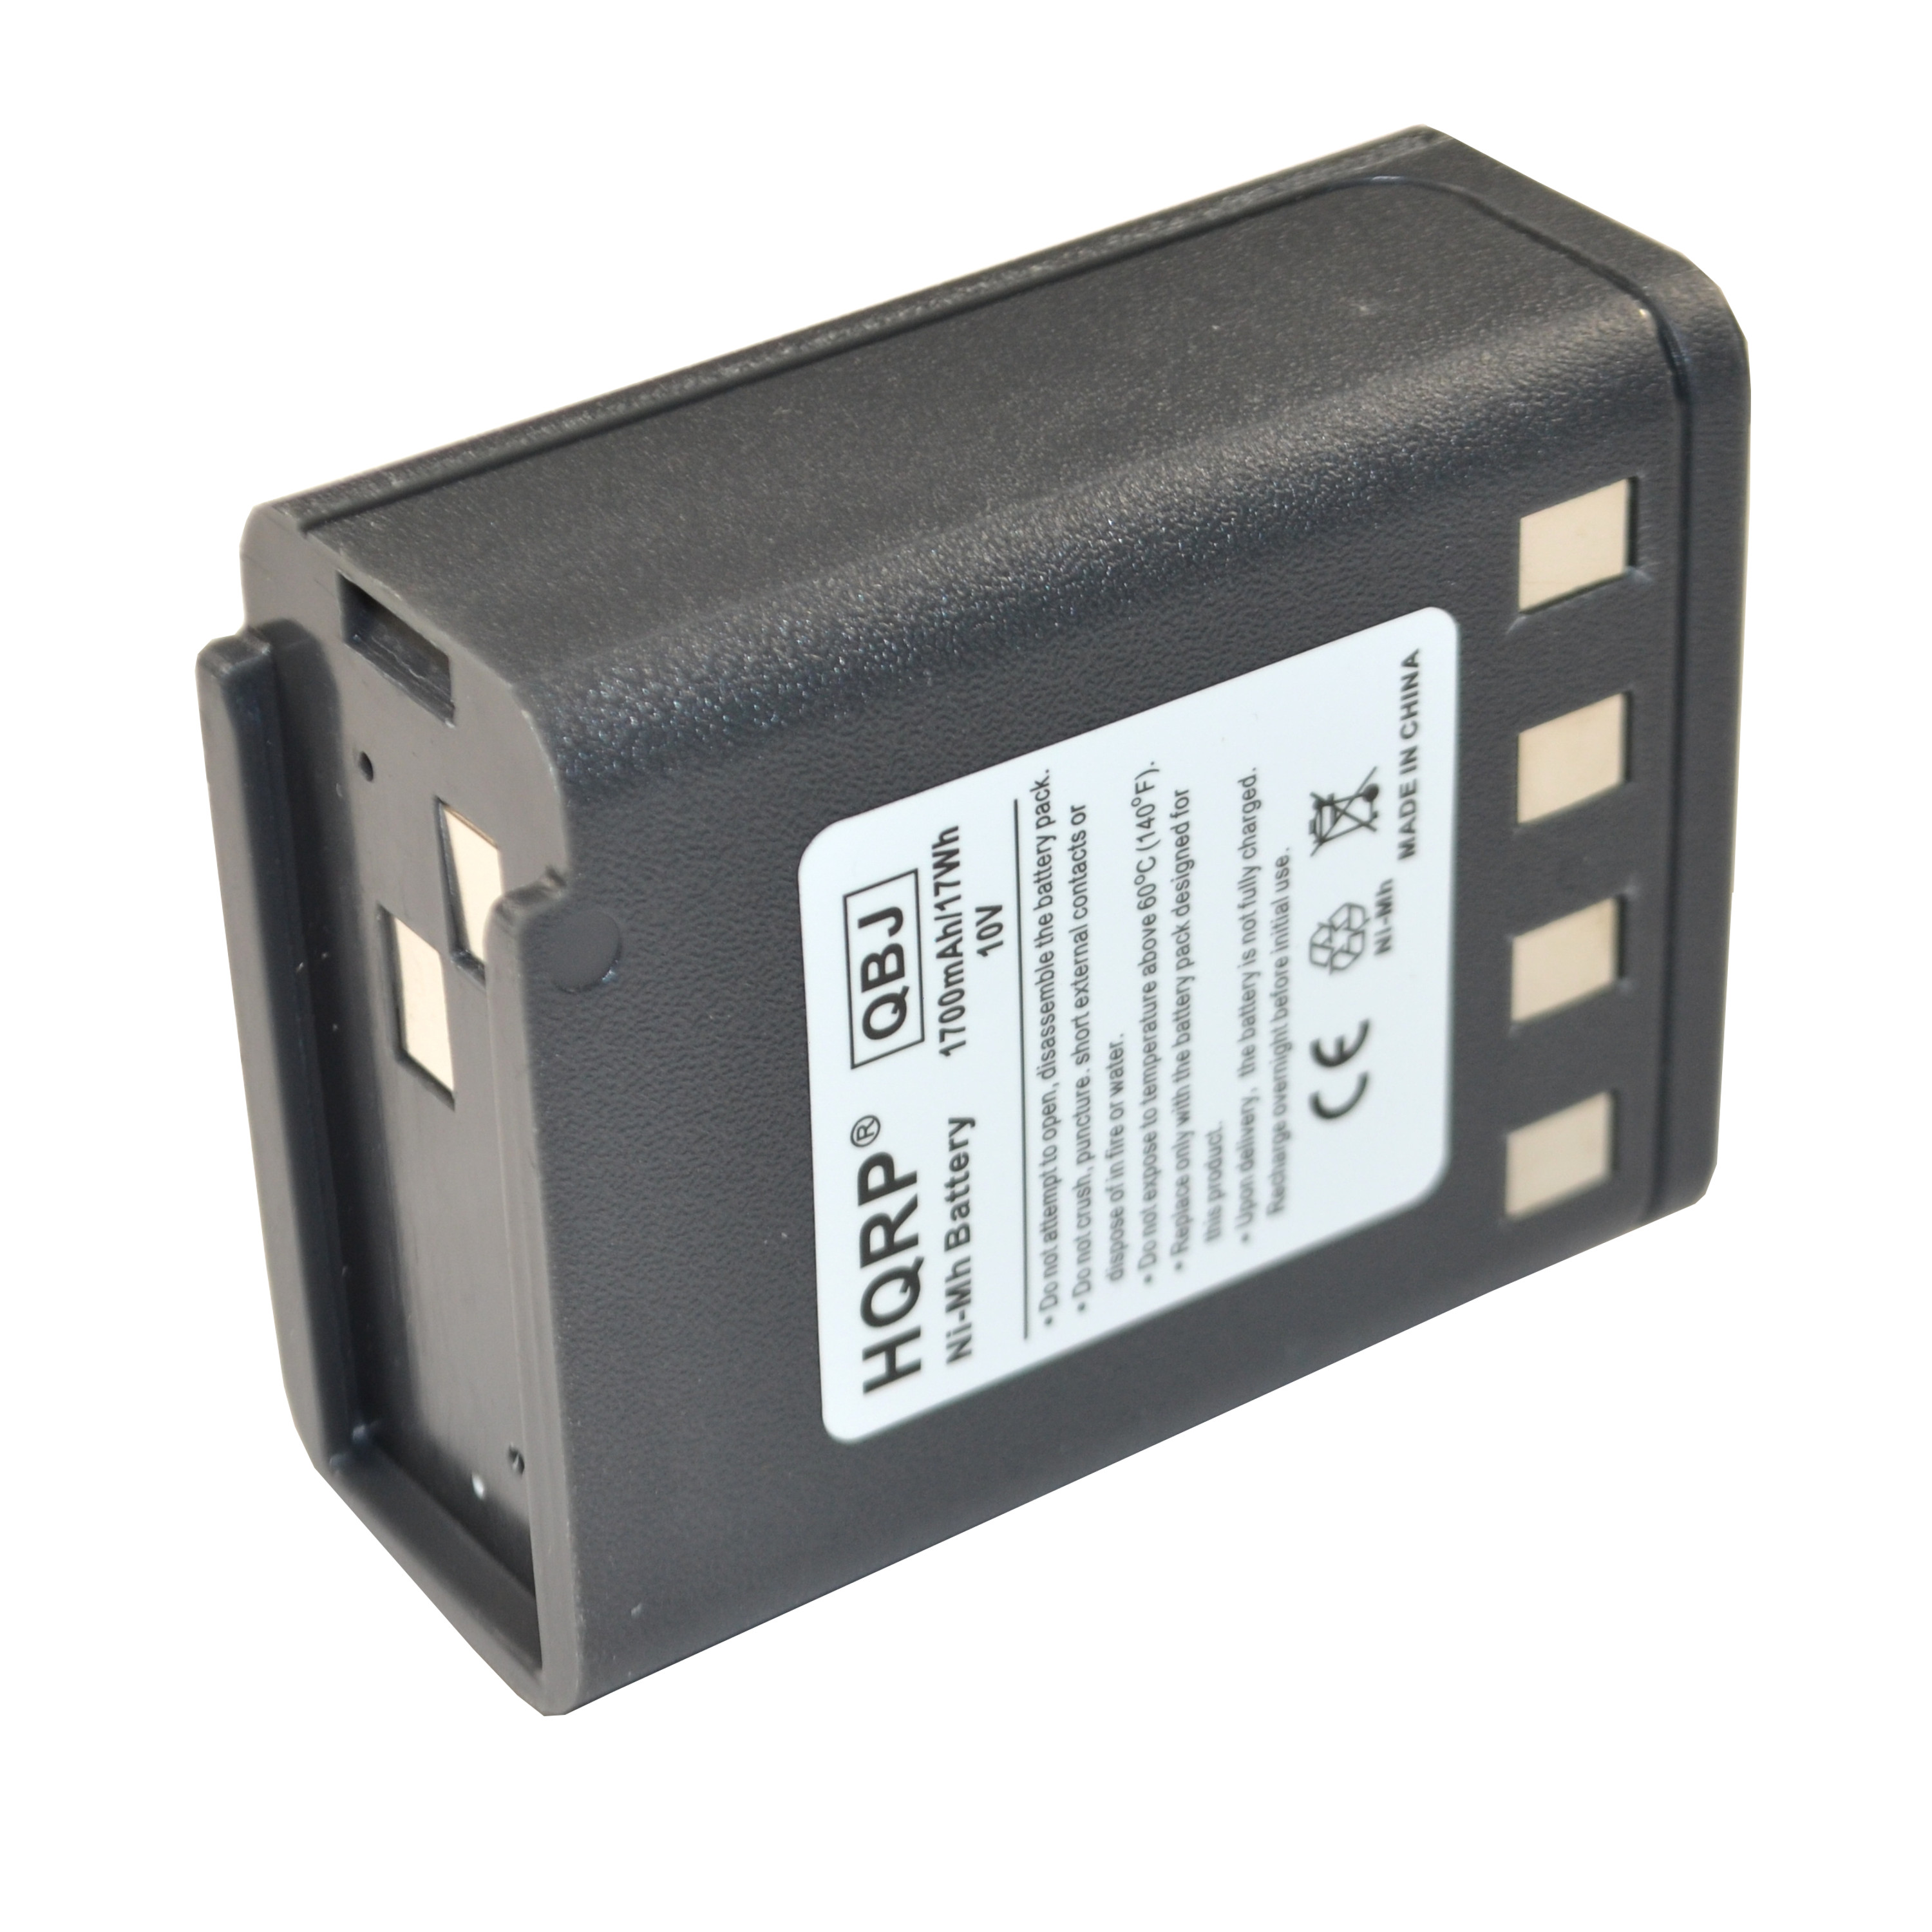 HQRP 1700mAh Battery for Motorola NTN5521B / NTN5531A / NTN5531B / NTN5048 / NTN5049 - image 2 of 6